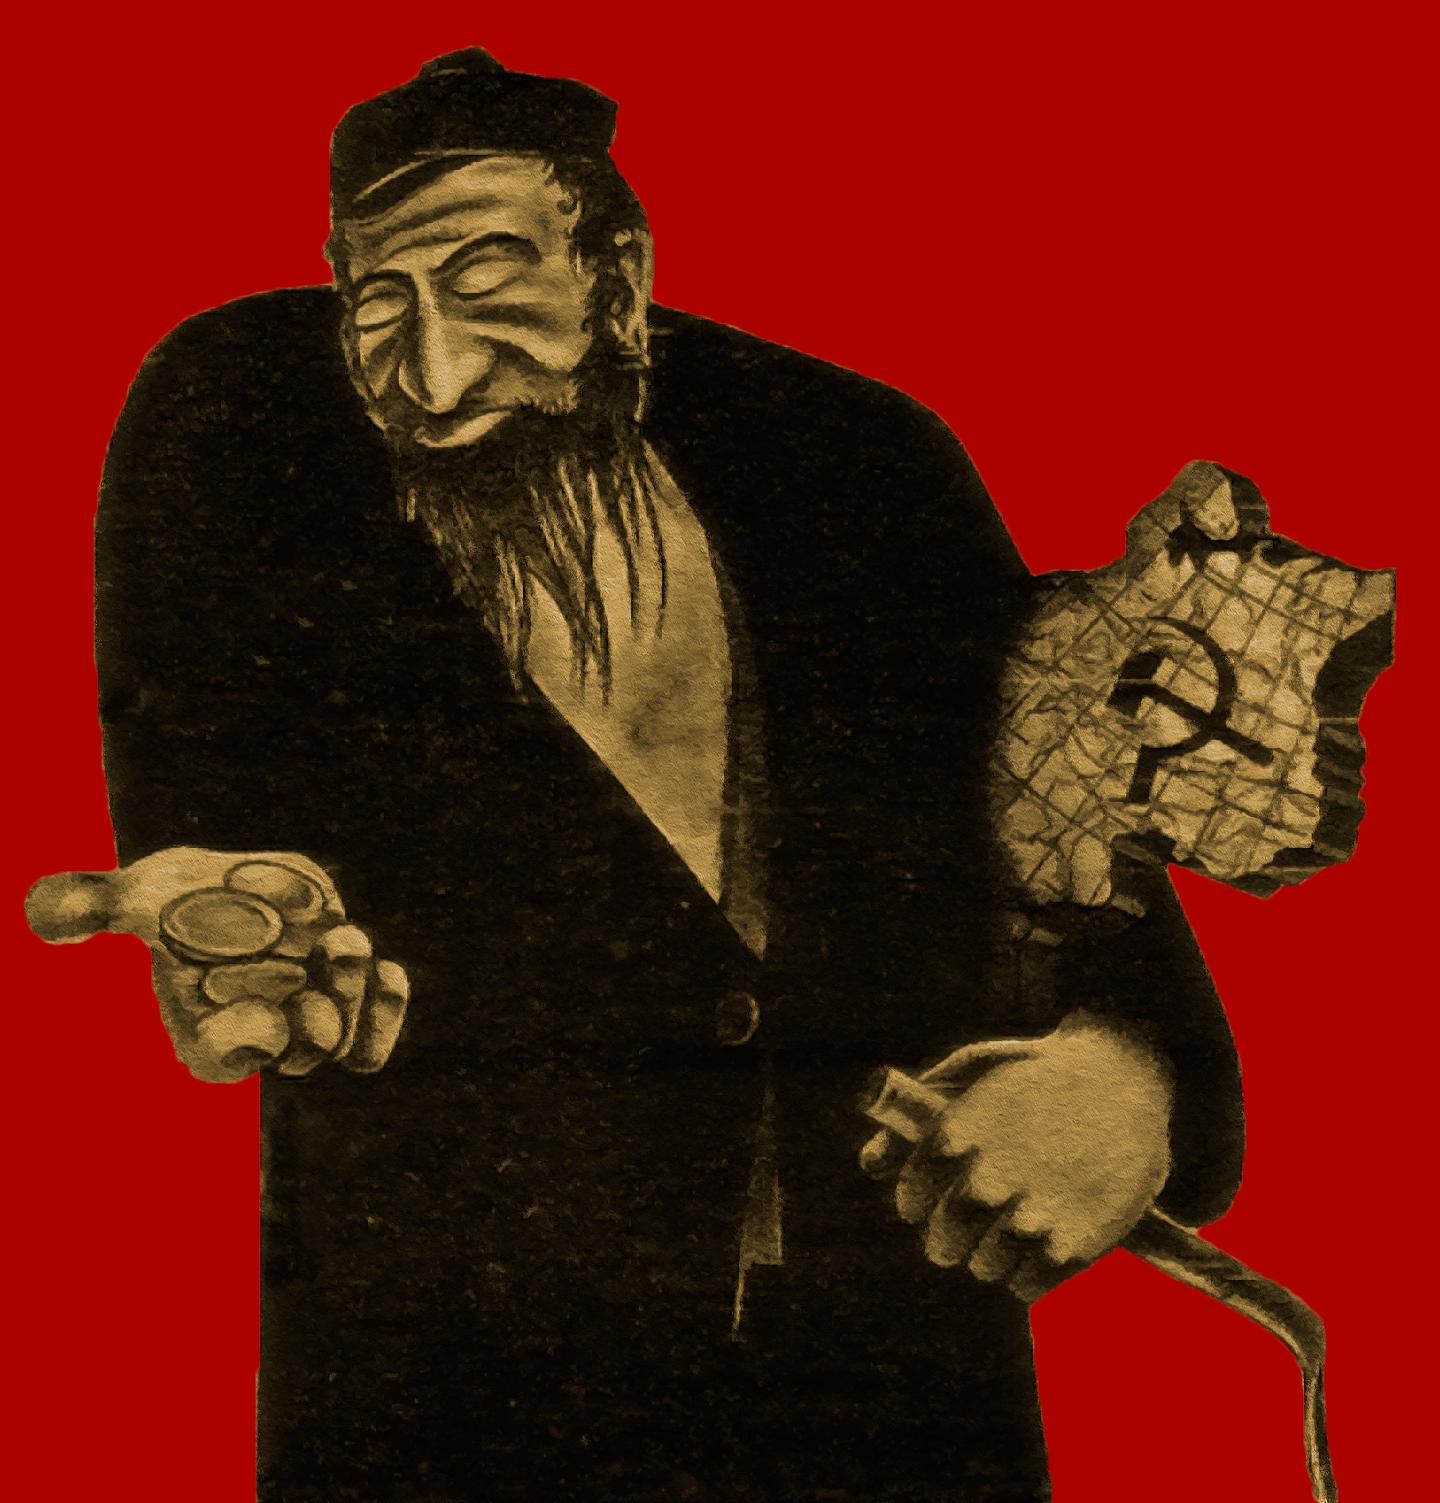 den röde juden Symbolisk nidbild från tyska propagandautställningen ”Den evige juden” 1937. När Lenin grep makten i Ryssland likställde ultrahögern revolutionen med en judusk konspiration.